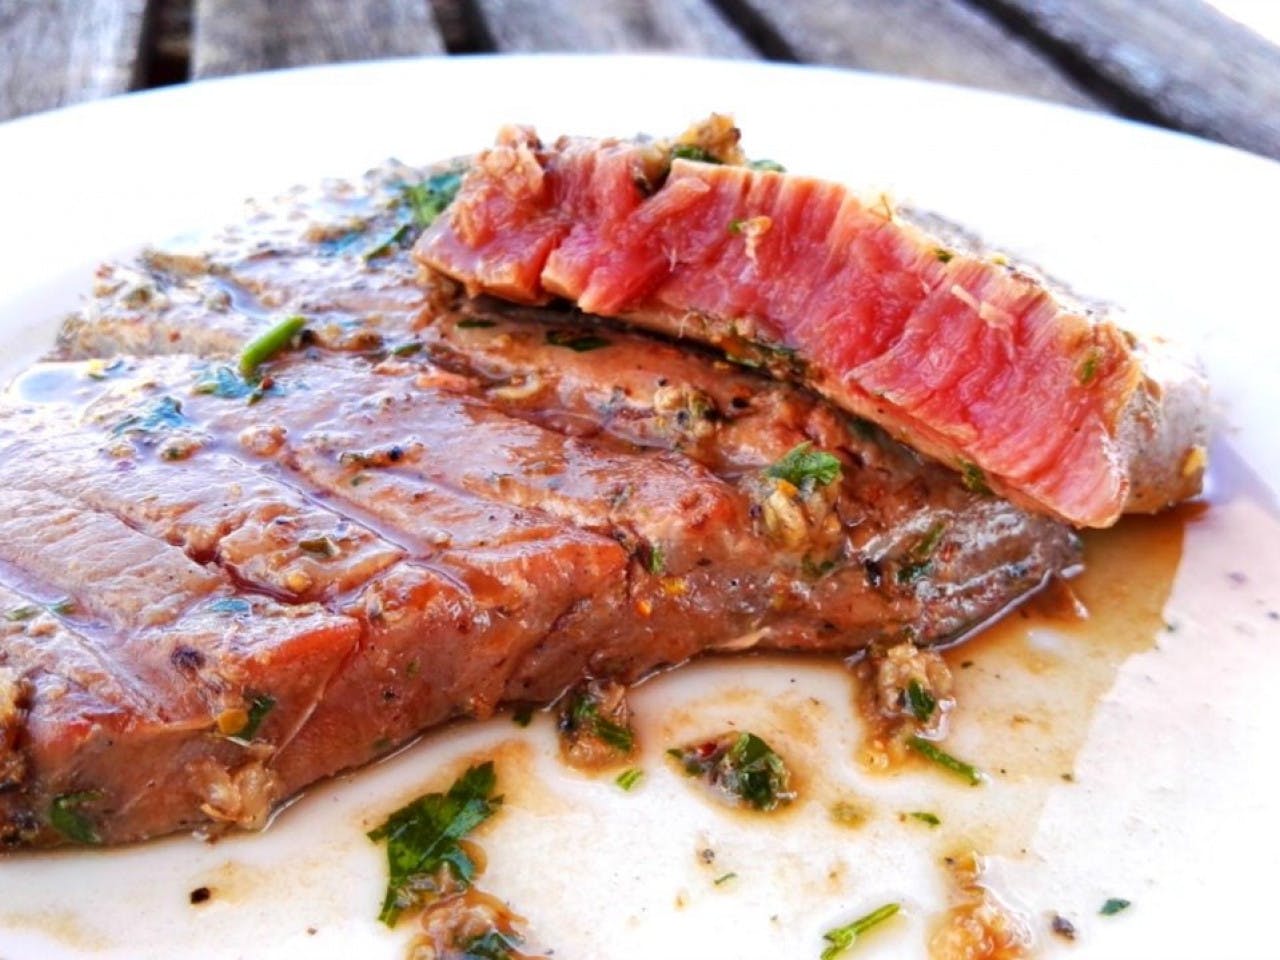 BBQ Tuna steak the Oriental way